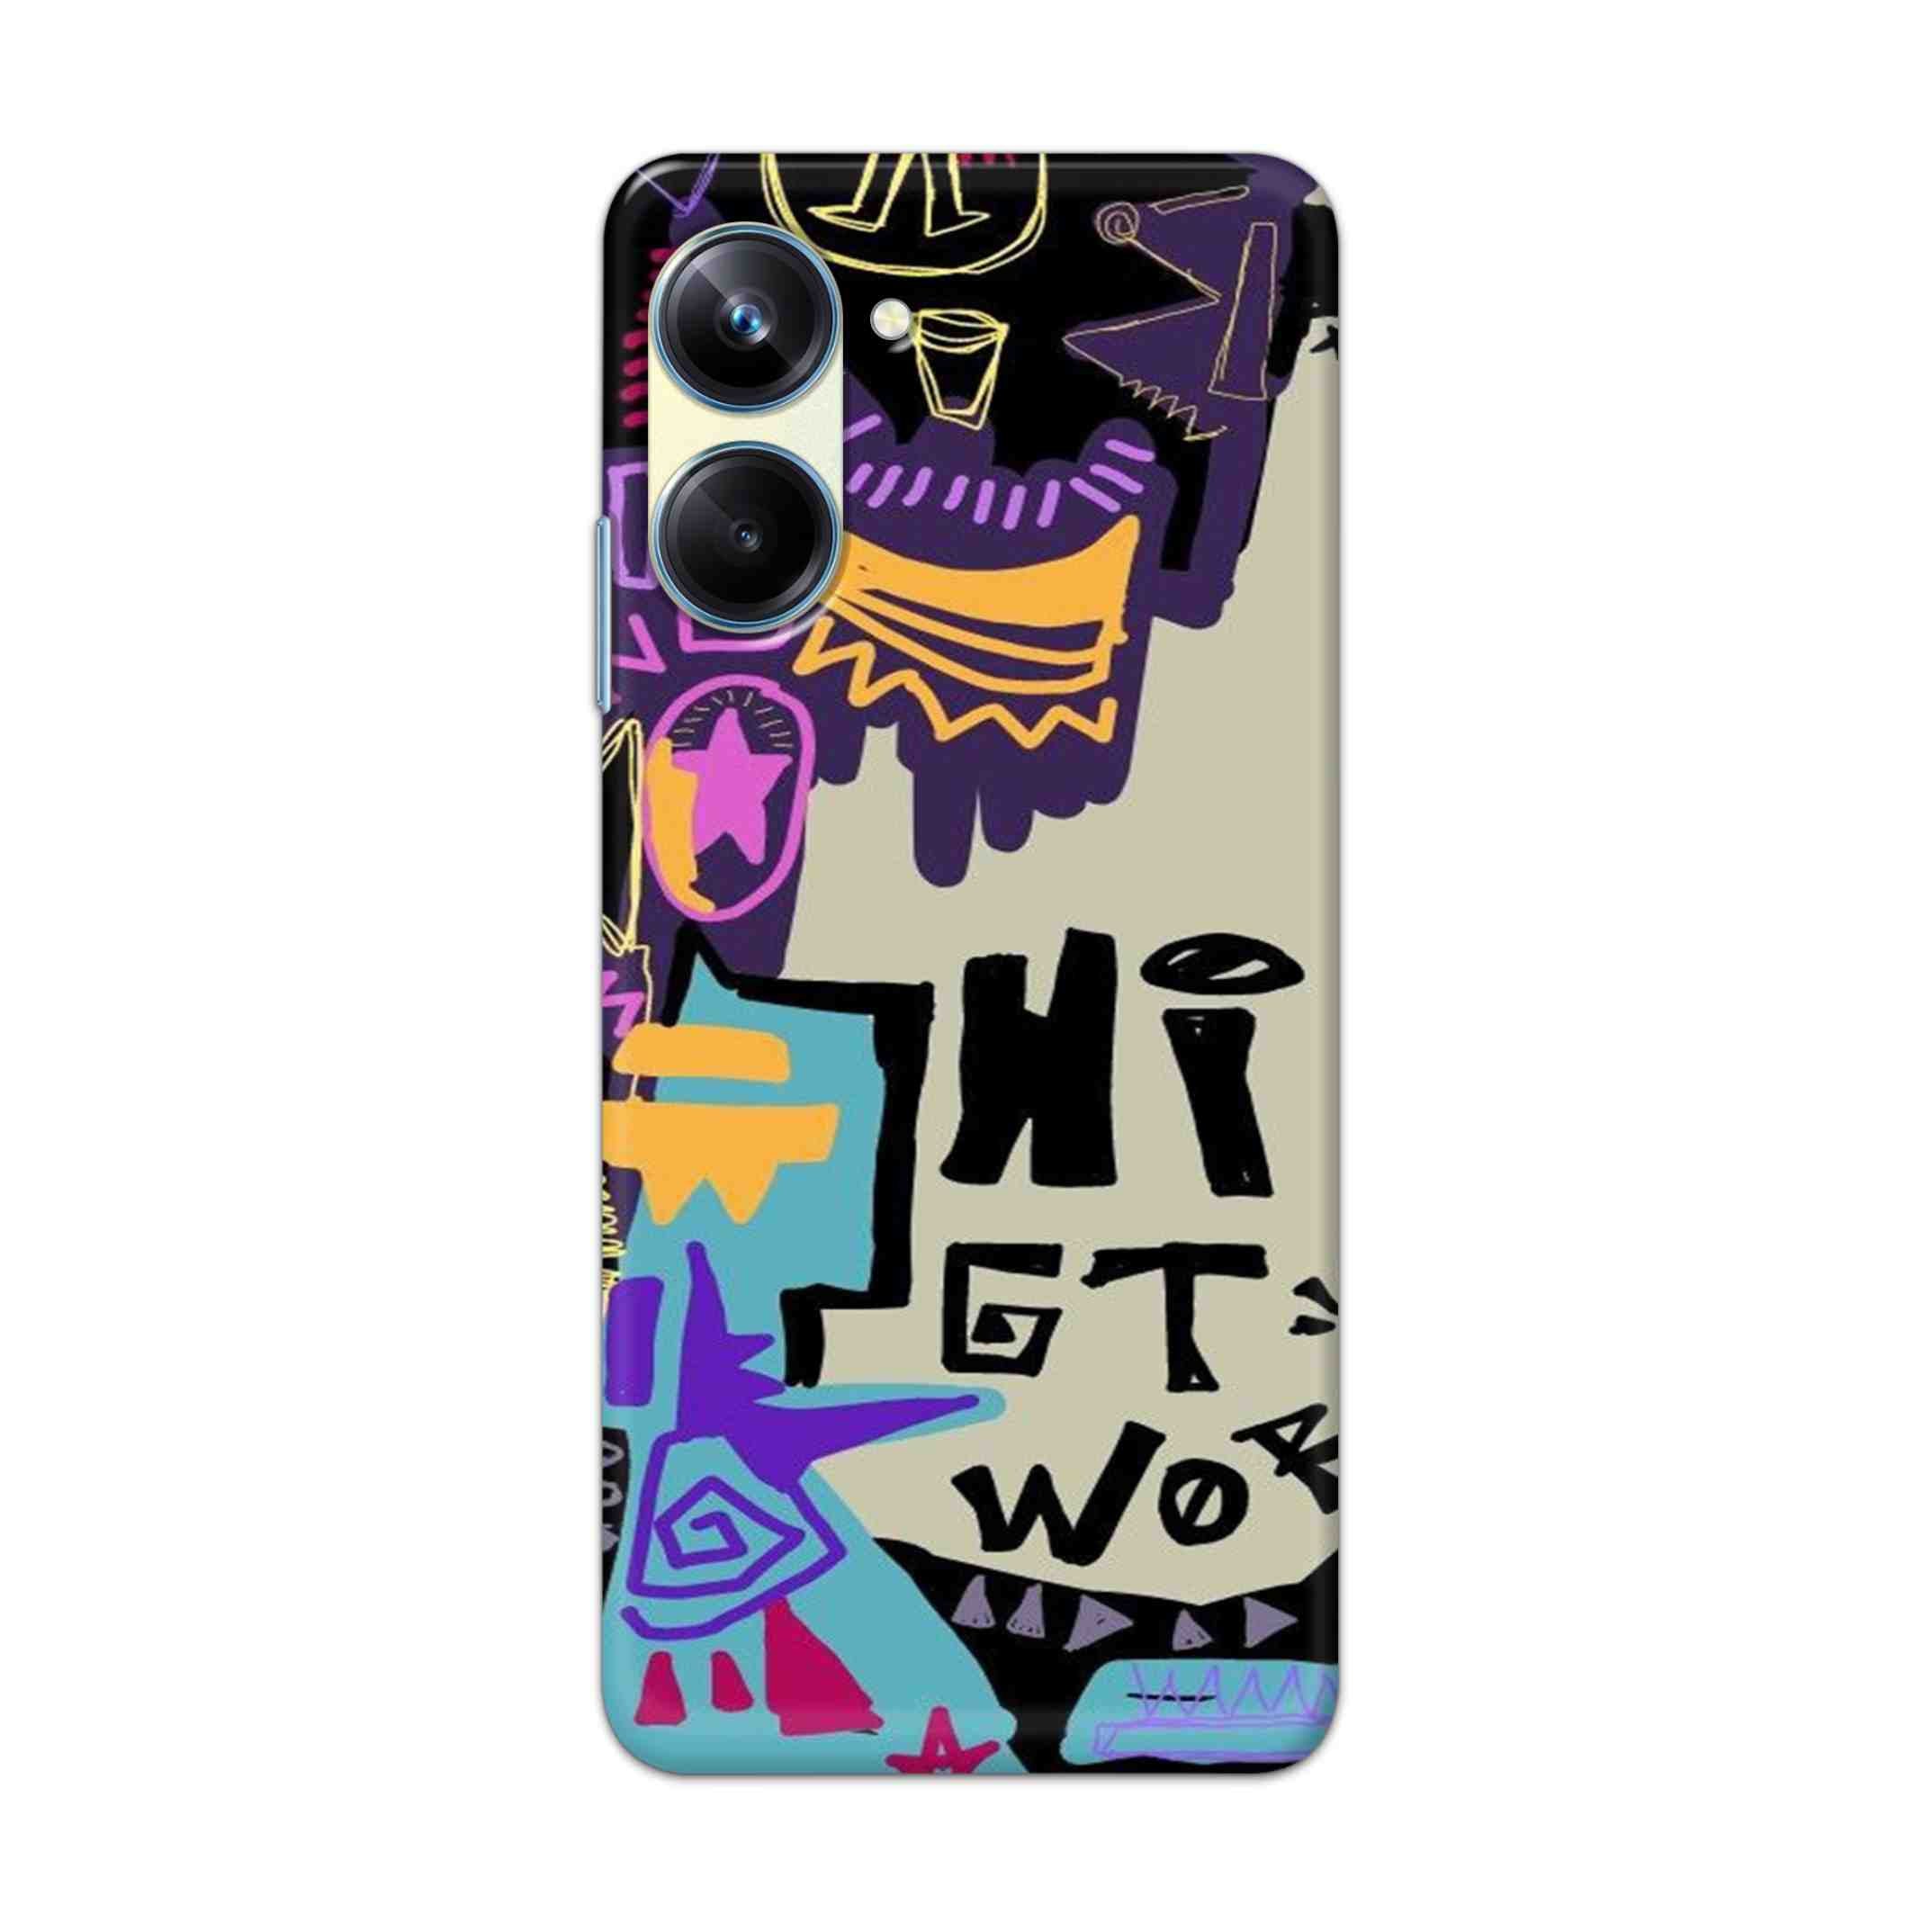 Buy Hi Gt World Hard Back Mobile Phone Case Cover For Realme 10 Pro Online